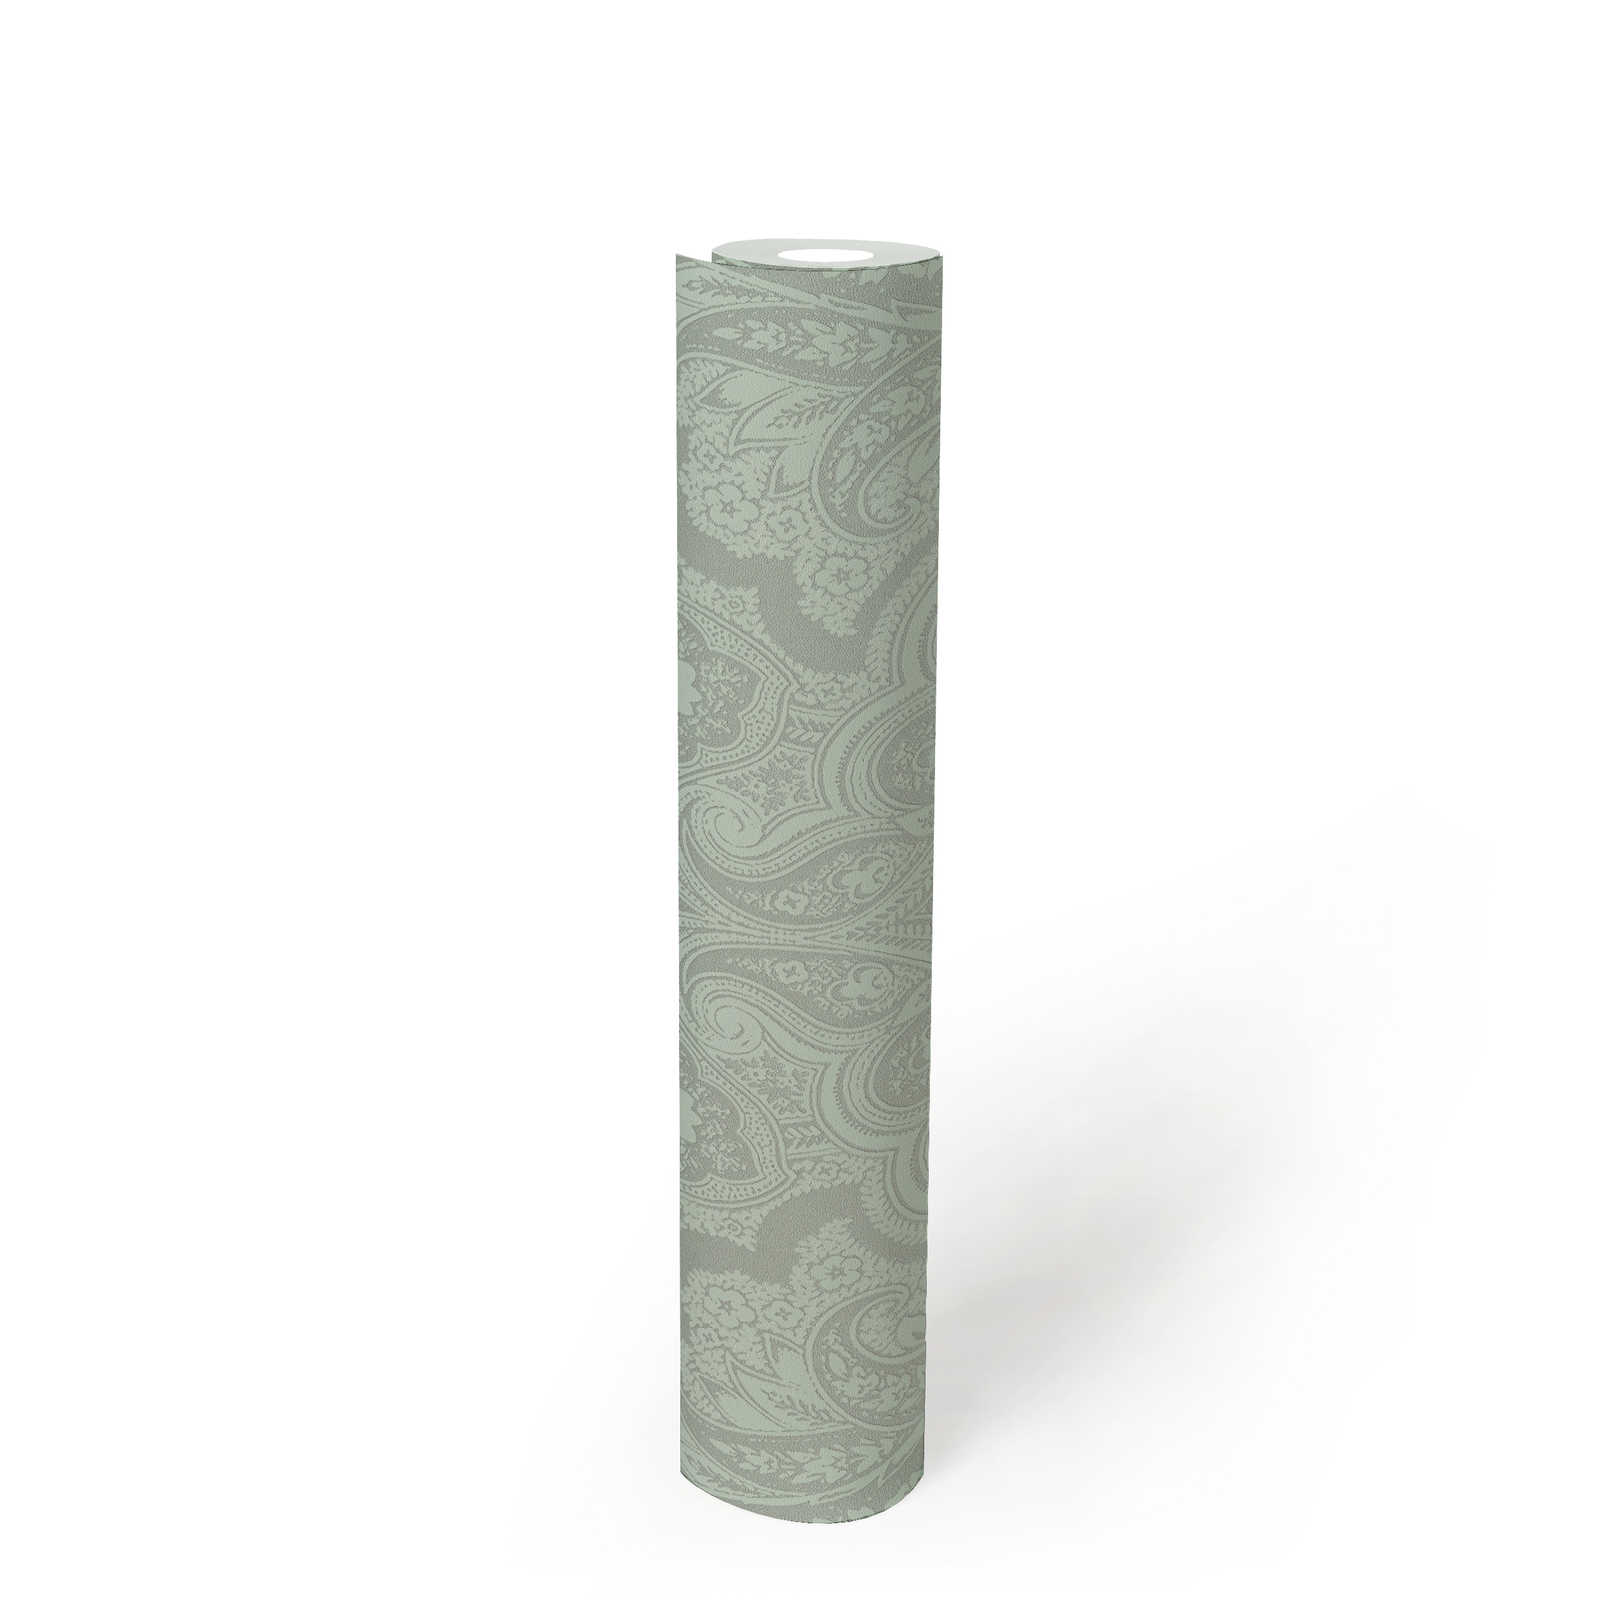             Carta da parati boho verde menta e grigio argento con motivi ornamentali - metallizzata, verde
        